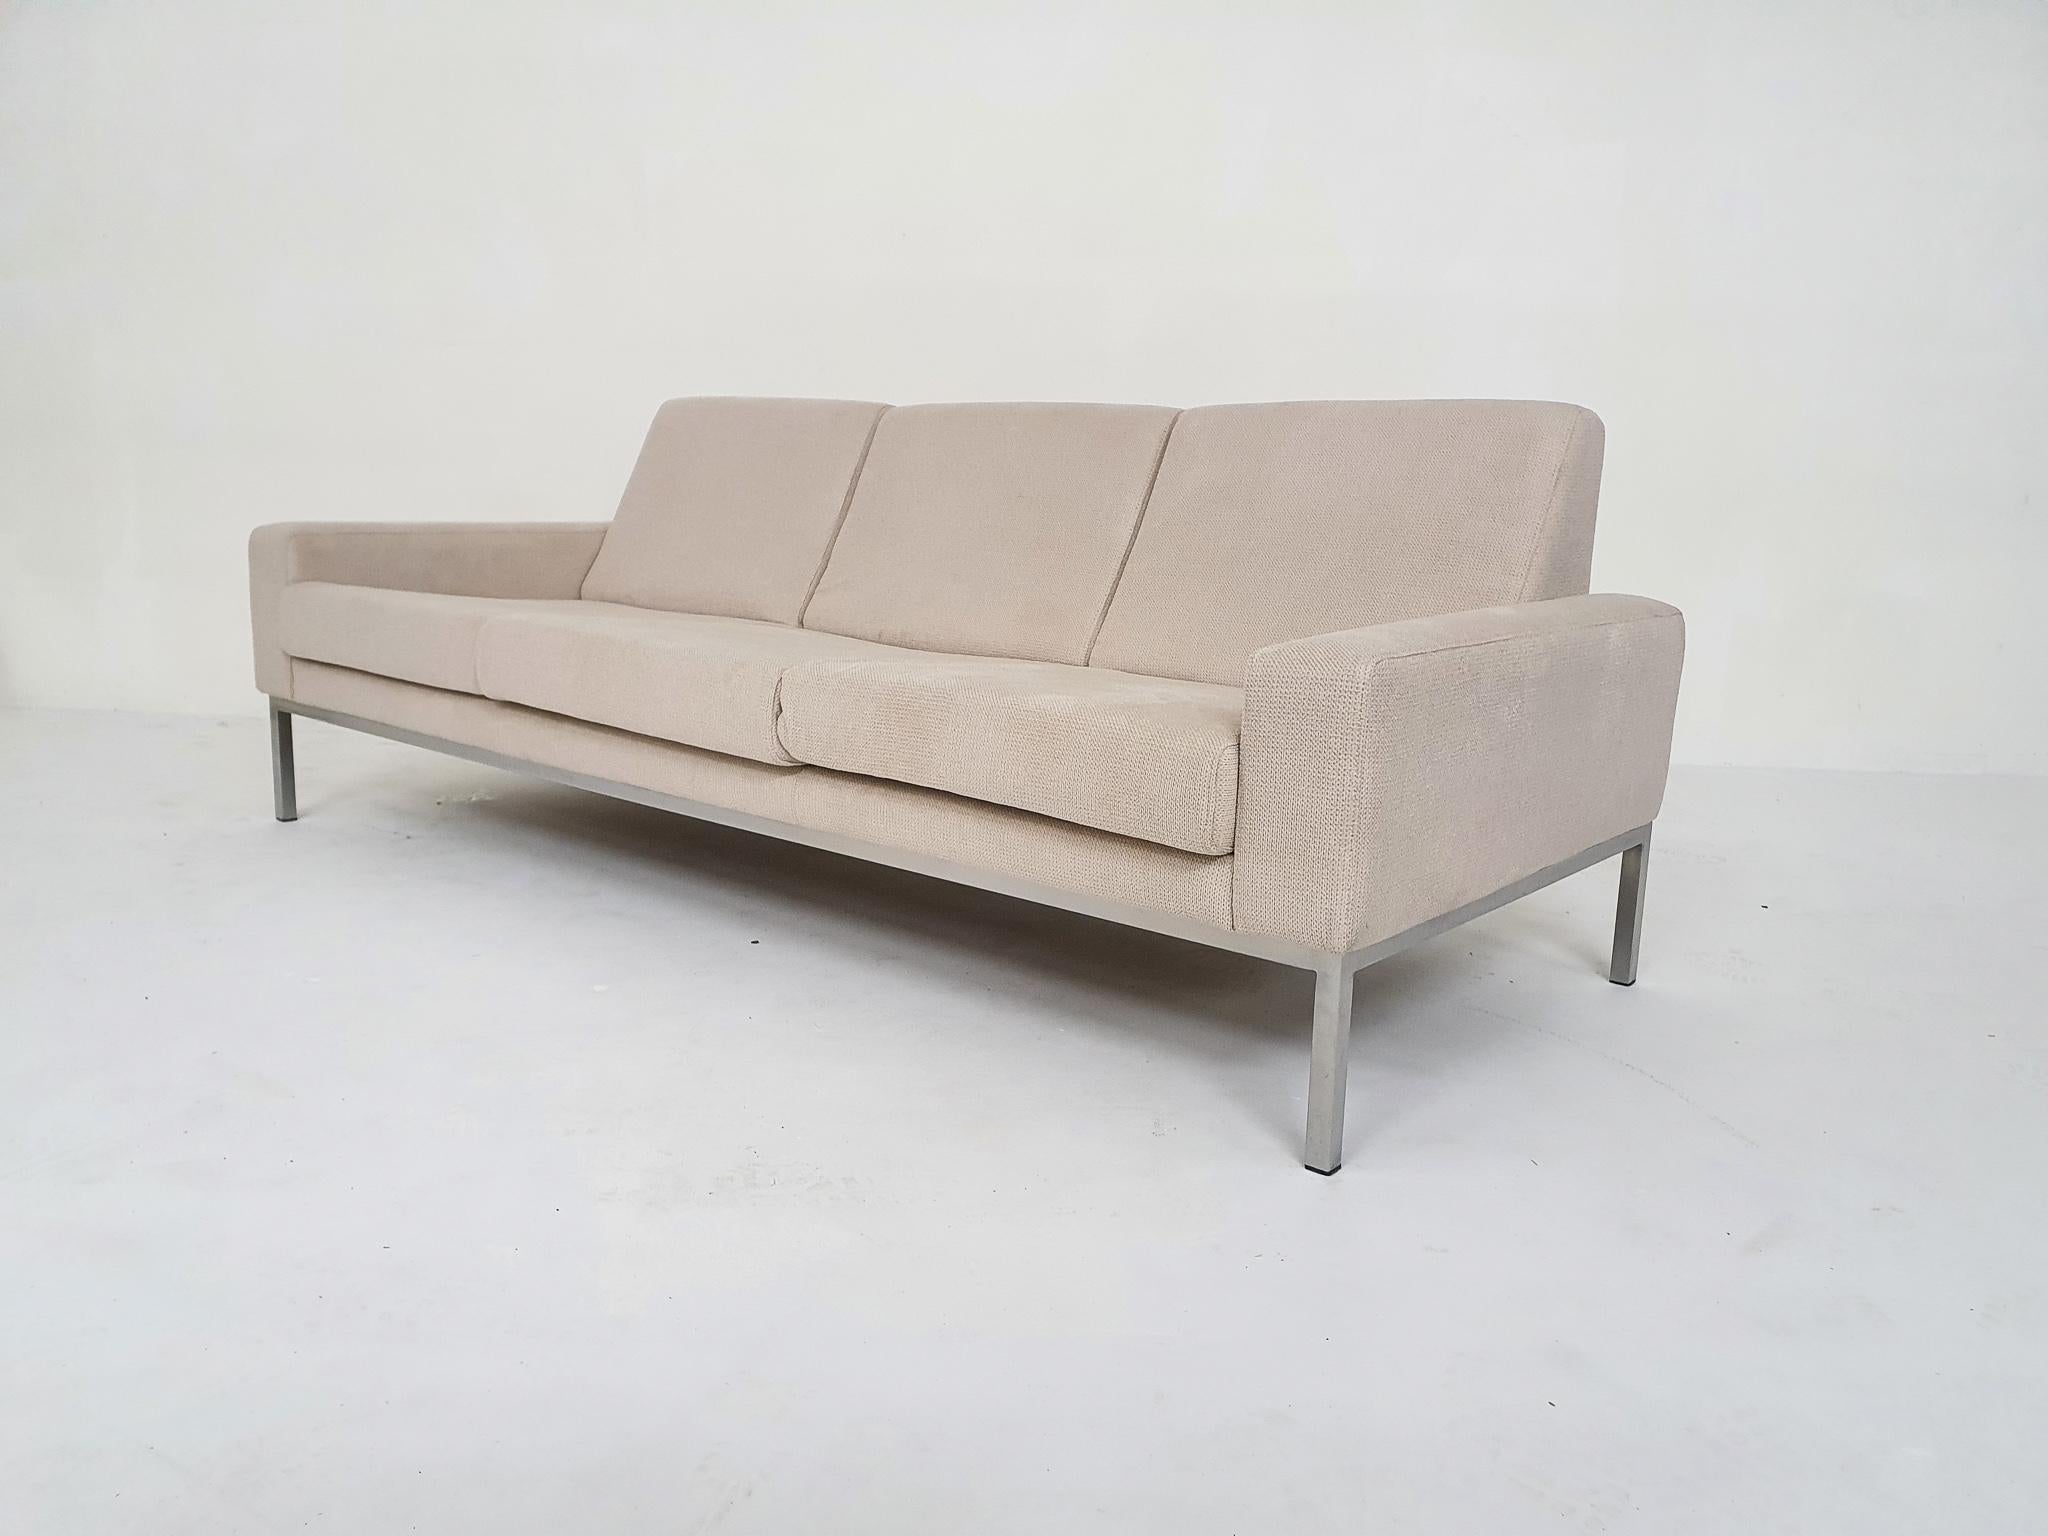 Mid-Century Modern Three-Seater Sofa Attrb to Gelderland, The Netherlands 1950's For Sale